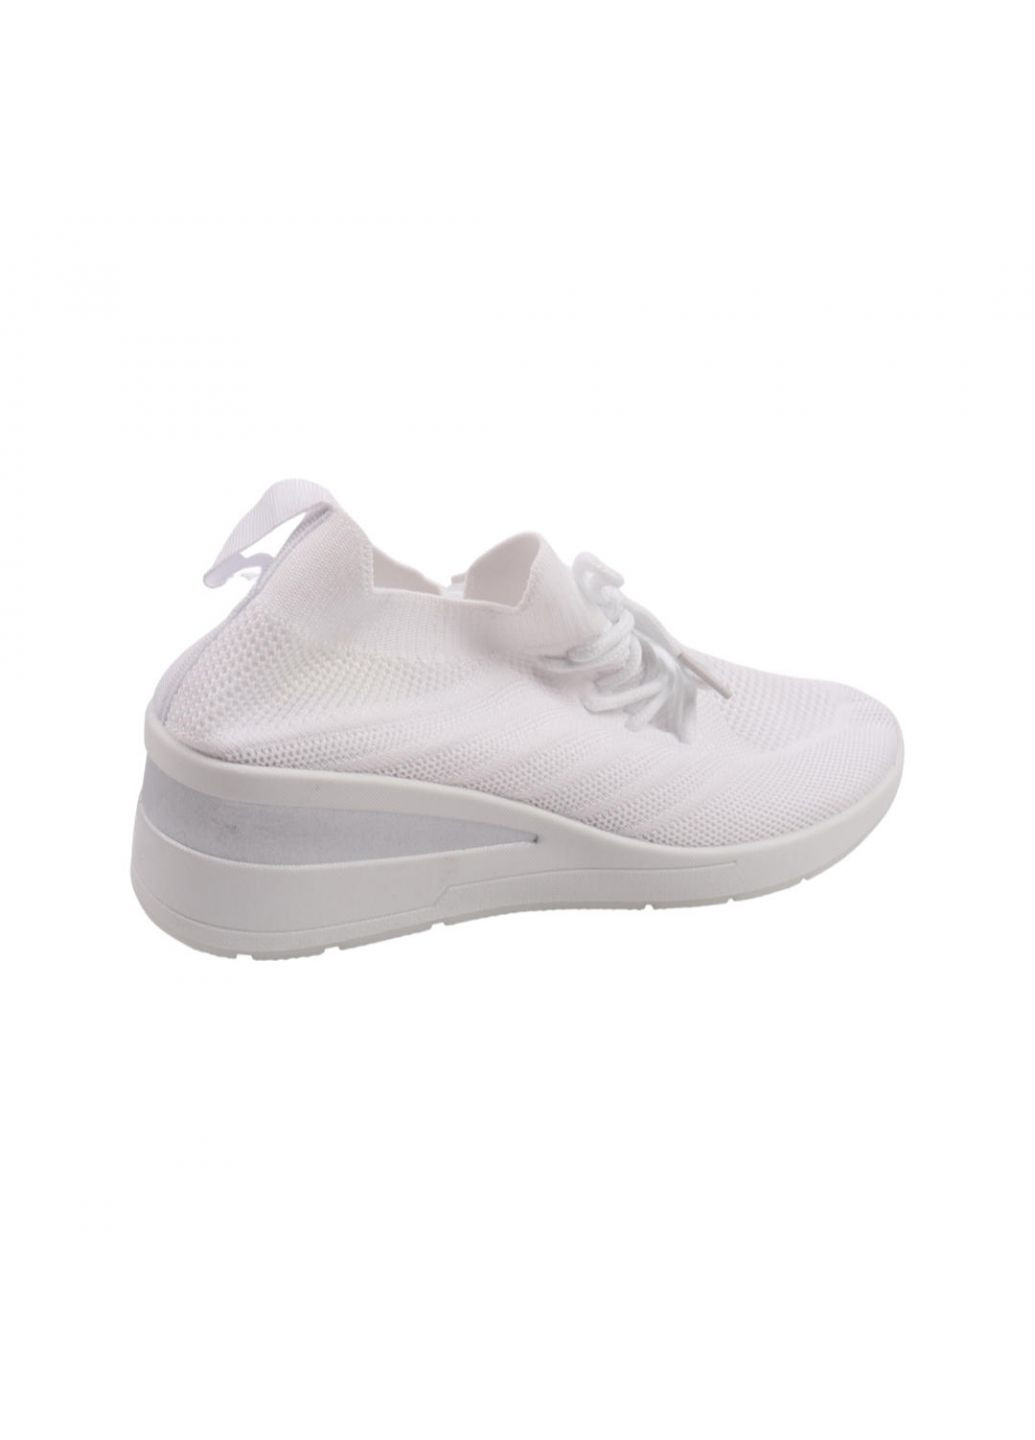 Білі кросівки жіночі білі текстиль Fashion 26-22LK